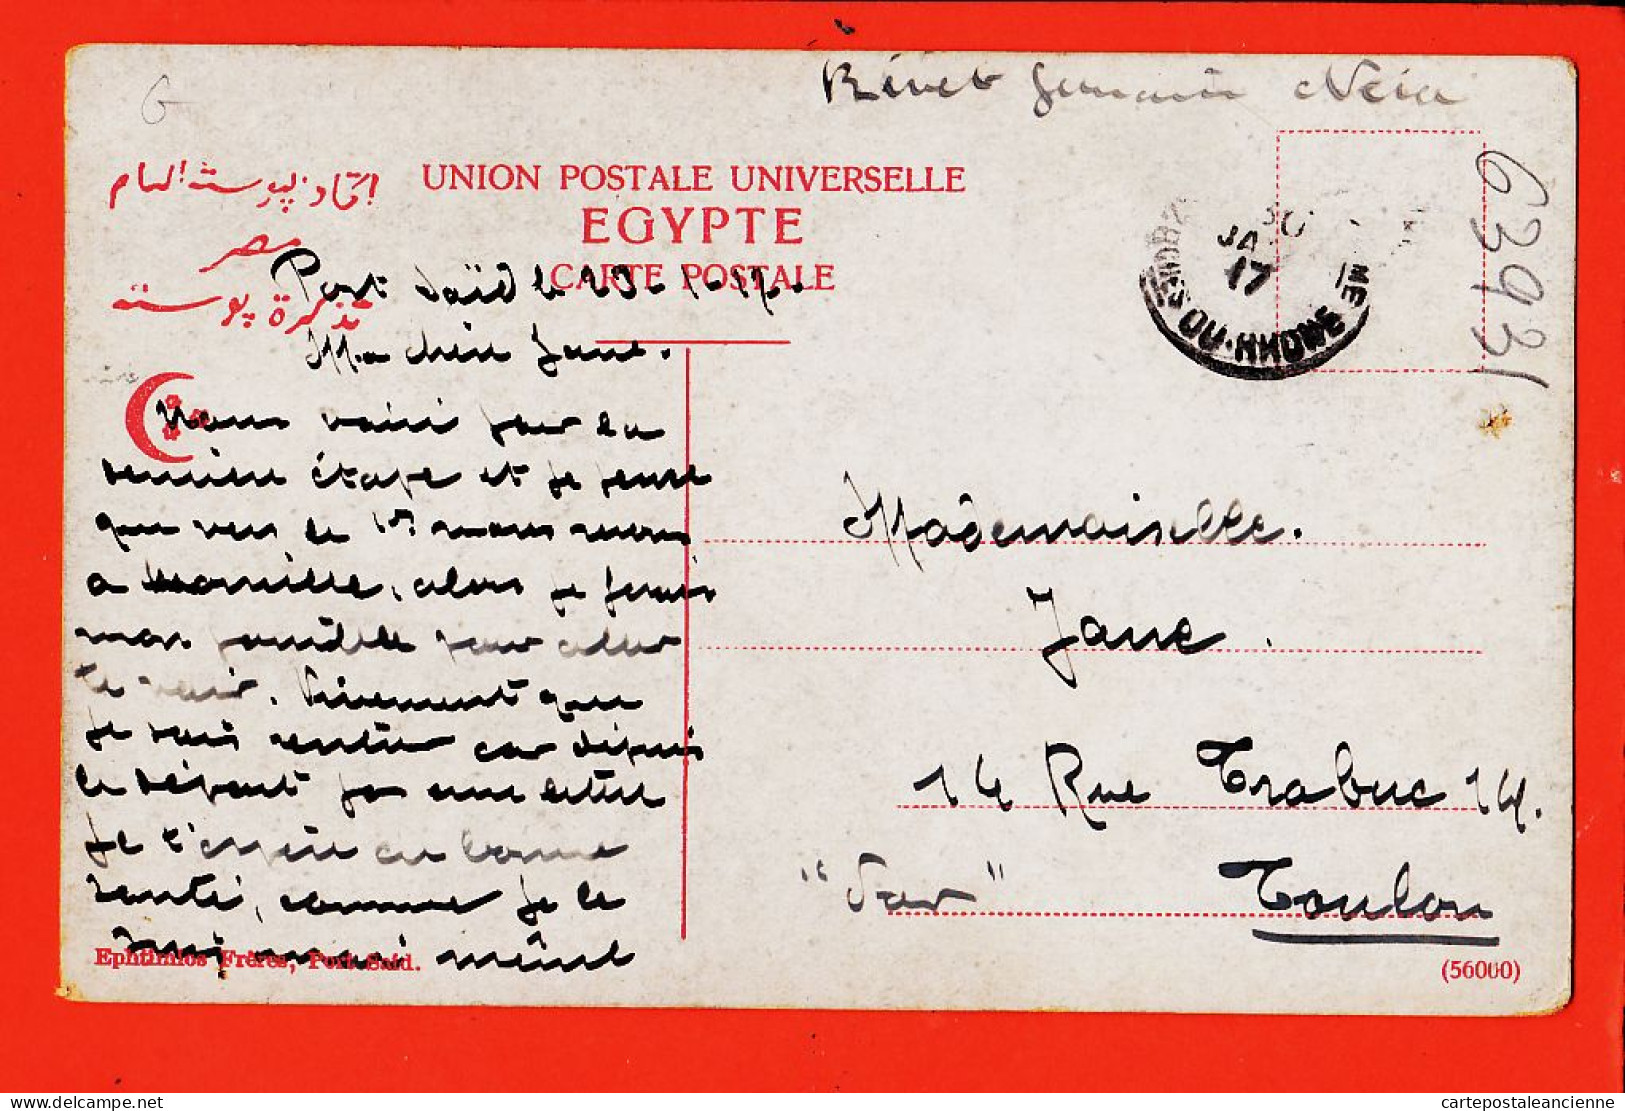 33804 / ⭐ Ethnic Egypte Petite Fille FELLAHIN Egyptienne Eau Jarre 1910s-Melle JANE Toulon-EPHTIMIOS Port-Saïd N° 56060 - Personnes